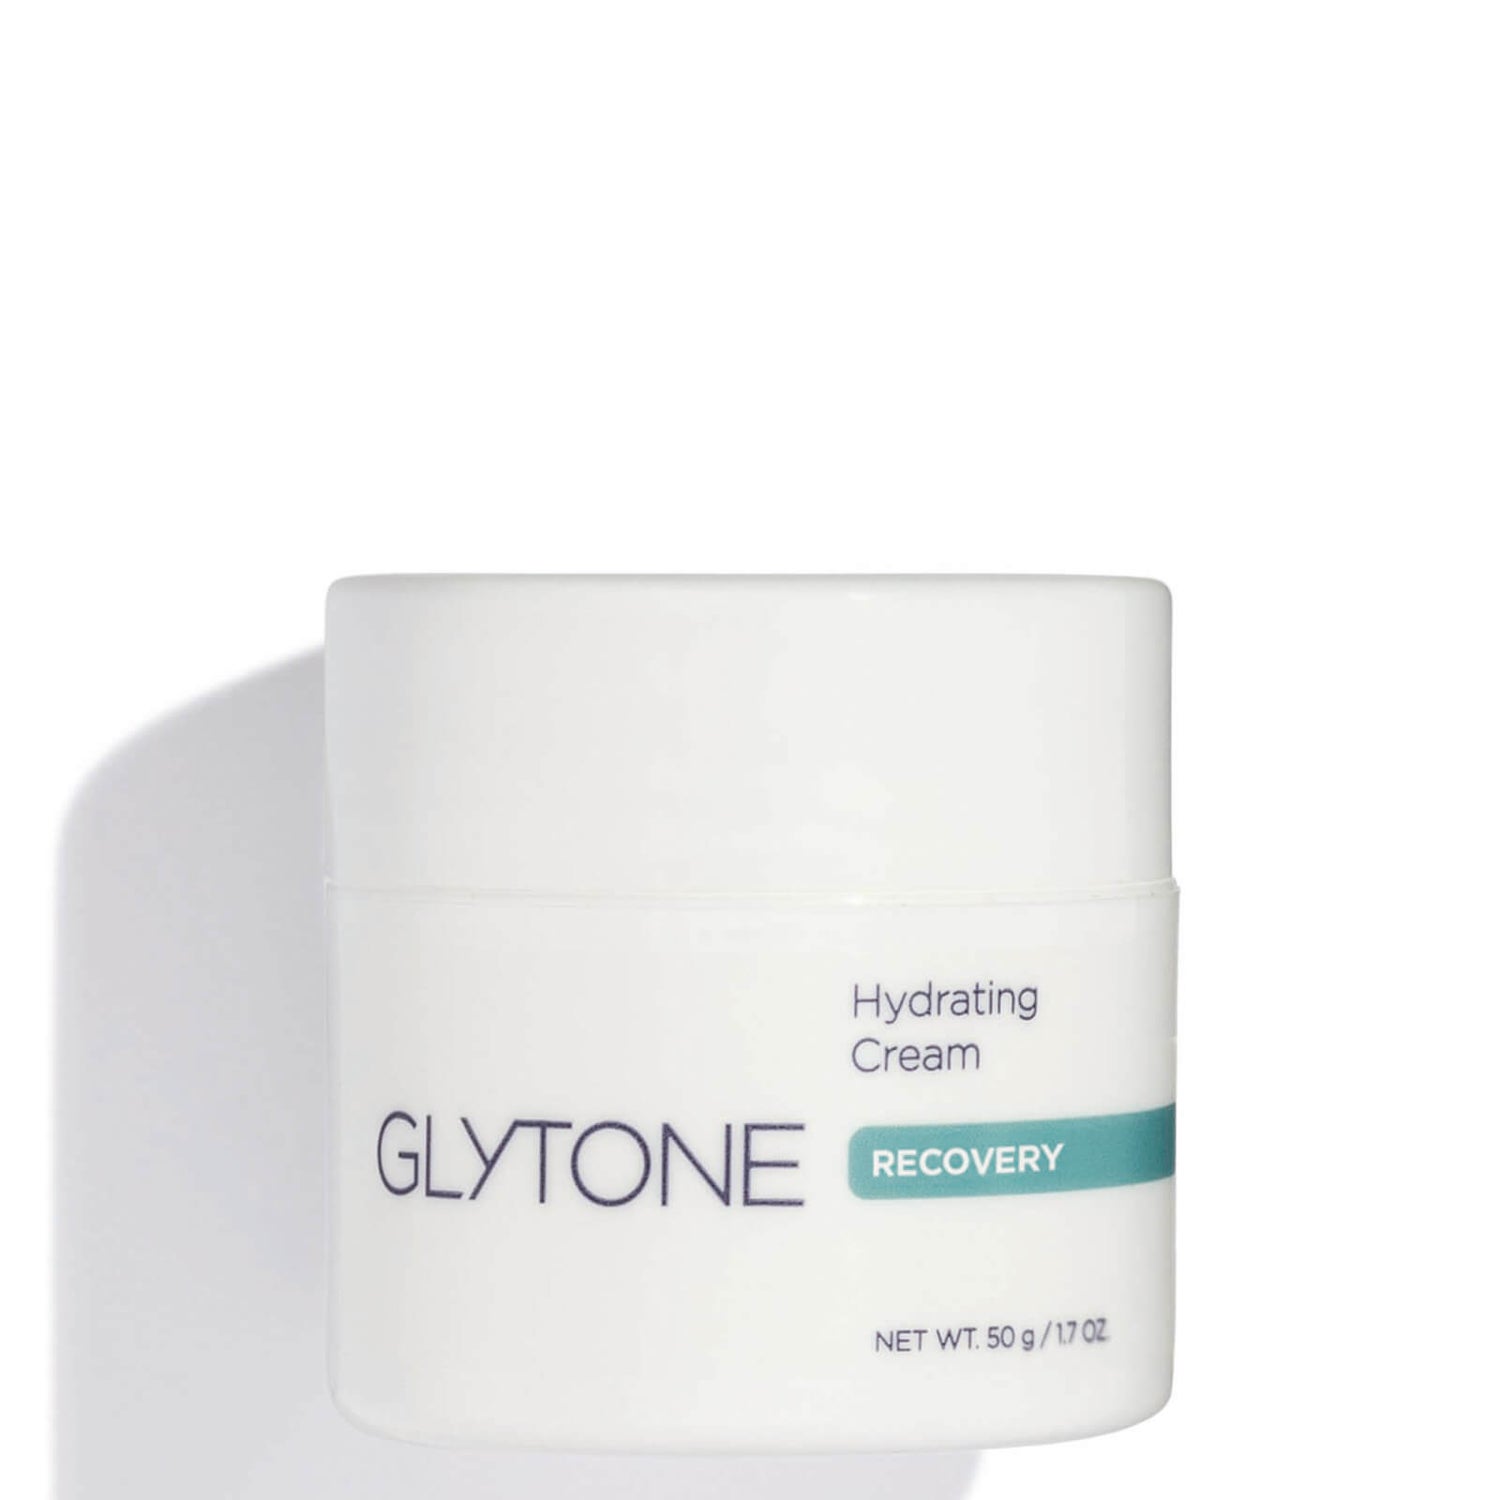 Glytone Hydrating Cream (1.7 oz.)